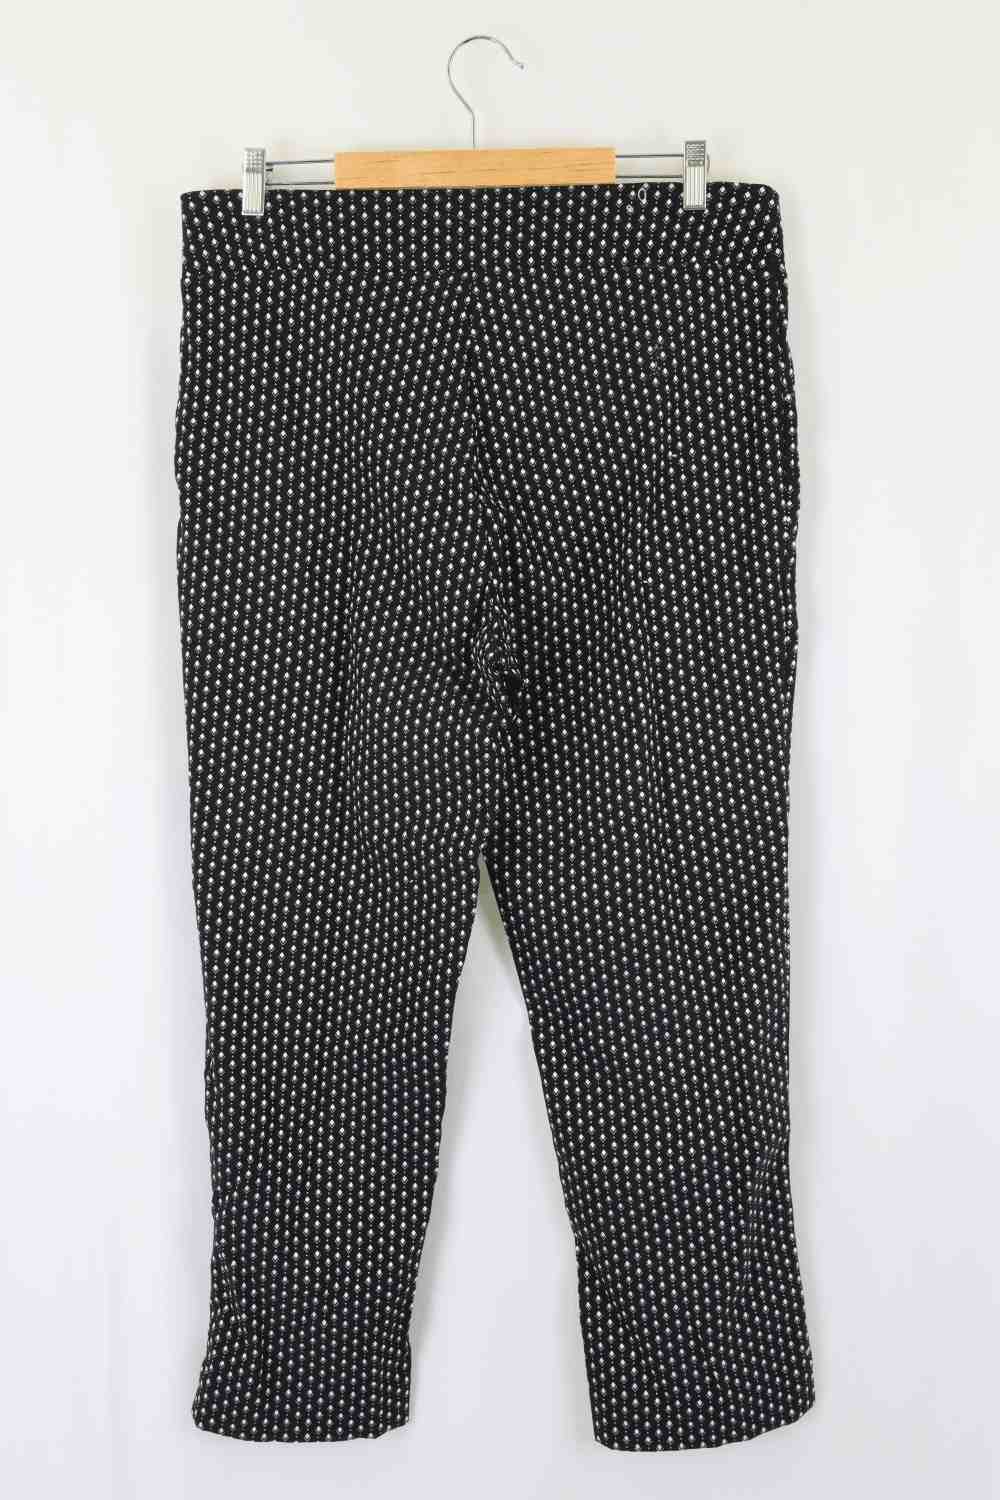 Taking Shape TS Jacquard Pattern Black and White Pants 16